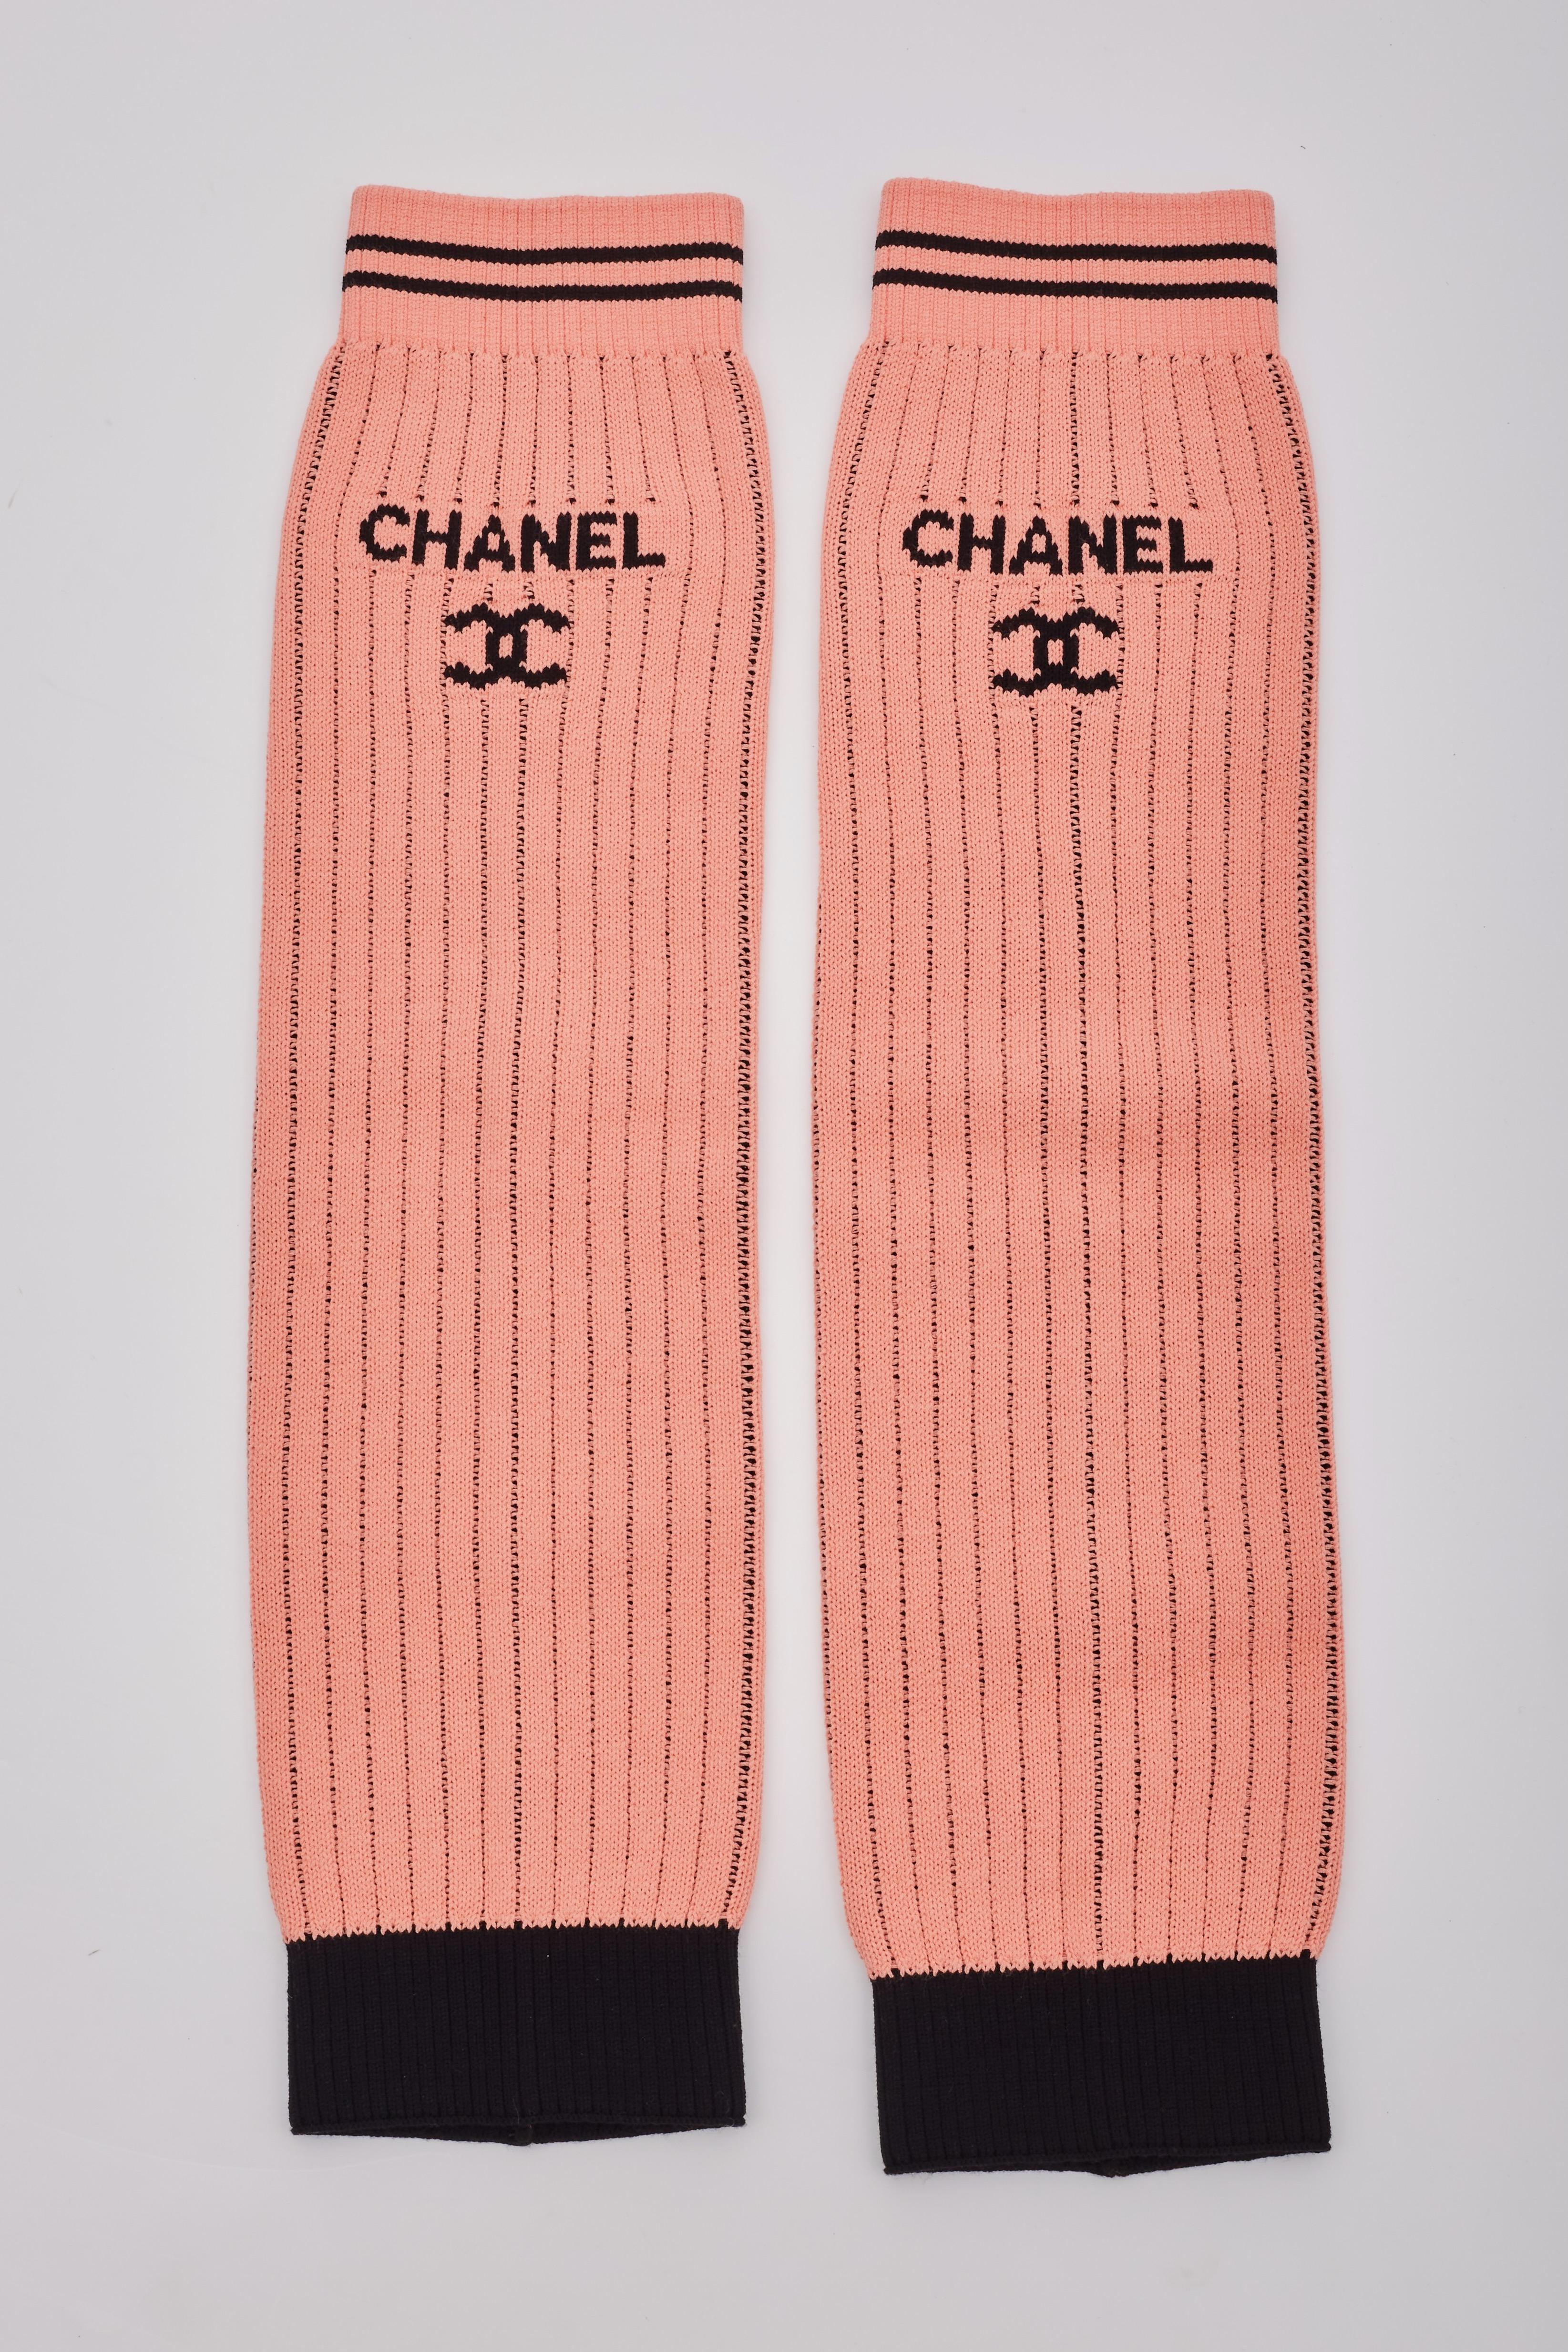 Wir präsentieren die begehrten Chanel Leg Warmers in Apricot (Koralle) aus der limitierten Kollektion der Chanel Cruise 2024 Linie. Dieses Stück wurde bei der LA Hollywood Cruise Runway Fashion Show gezeigt, und zwar in Look 33.

53 × 24 cm
Farbe: